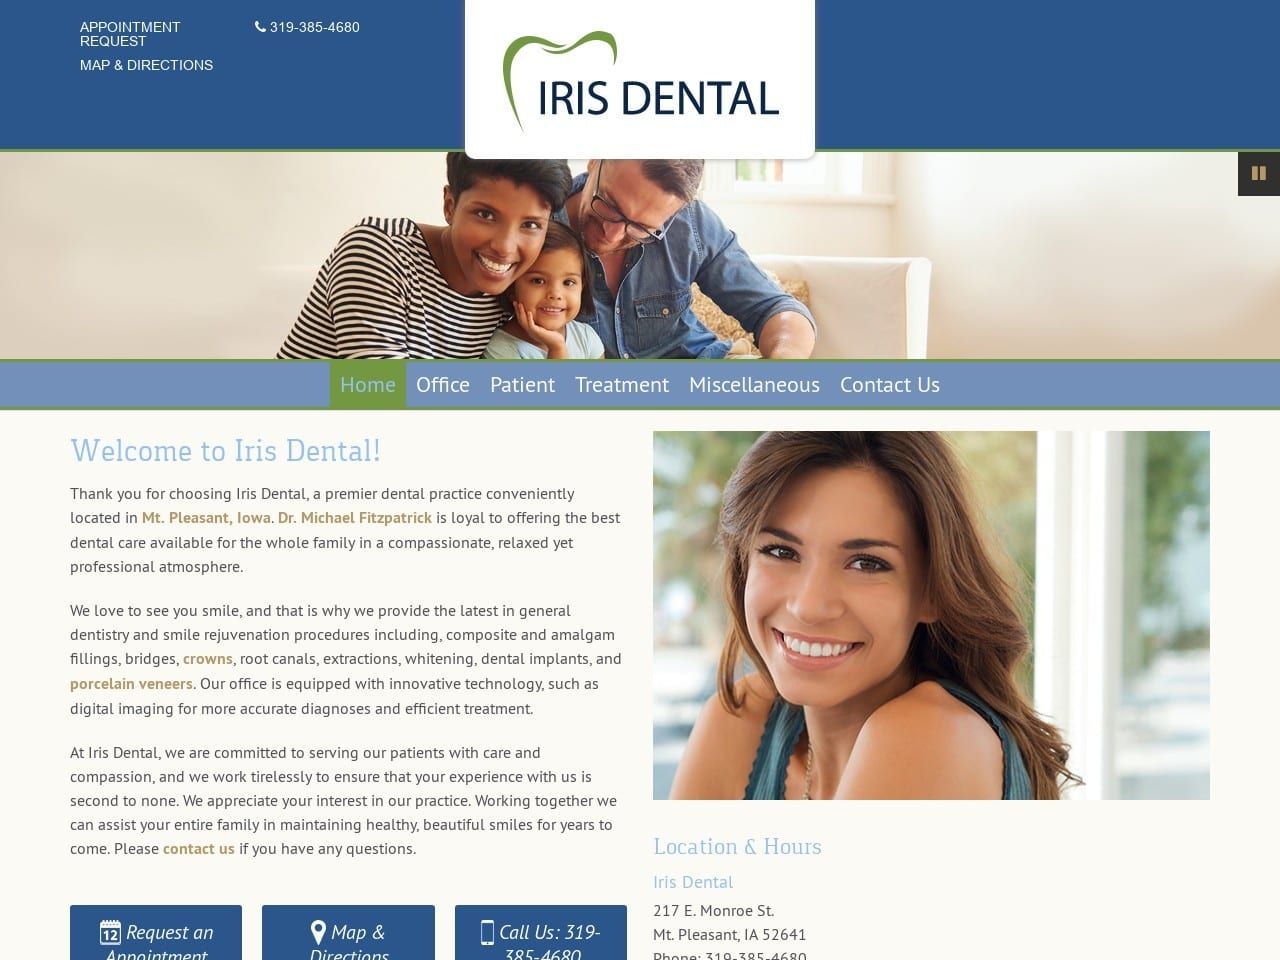 Iris Dental Website Screenshot from irisdentalcare.com